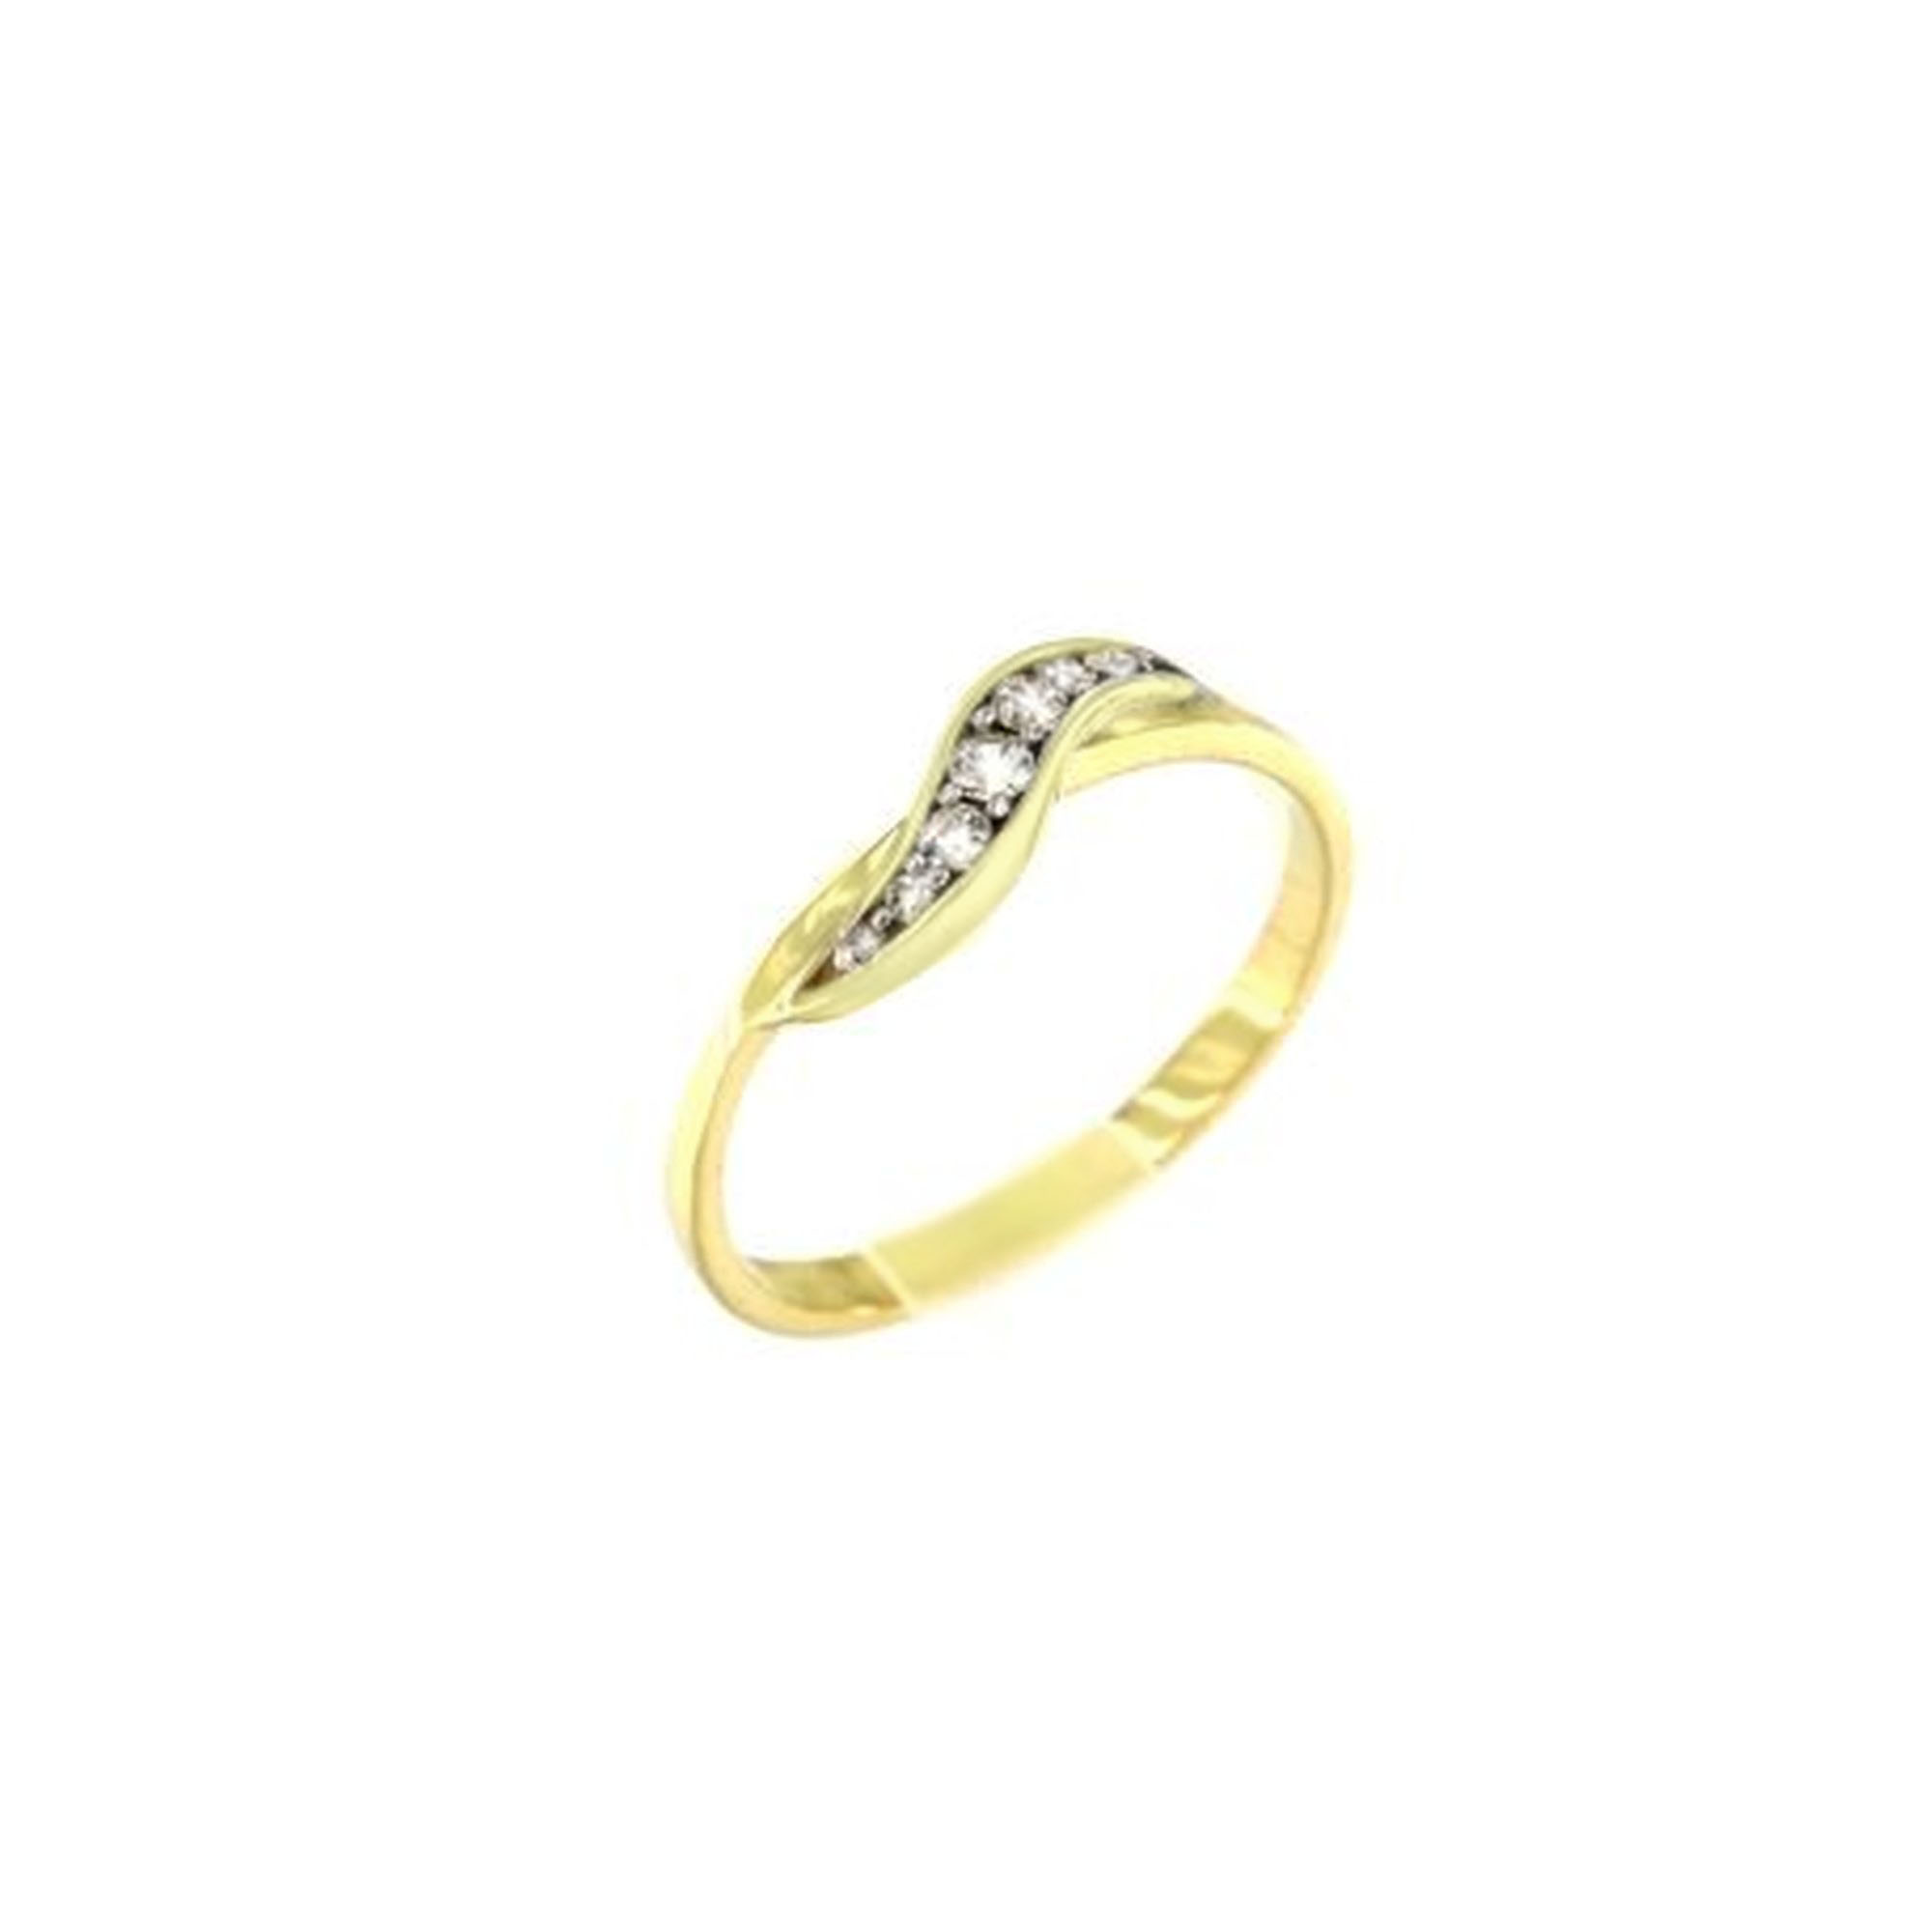 MOISS Moiss prsten ze žlutého zlata ANFISA RA000185 Velikost 60 mm RA000185 + doprava ZDARMA